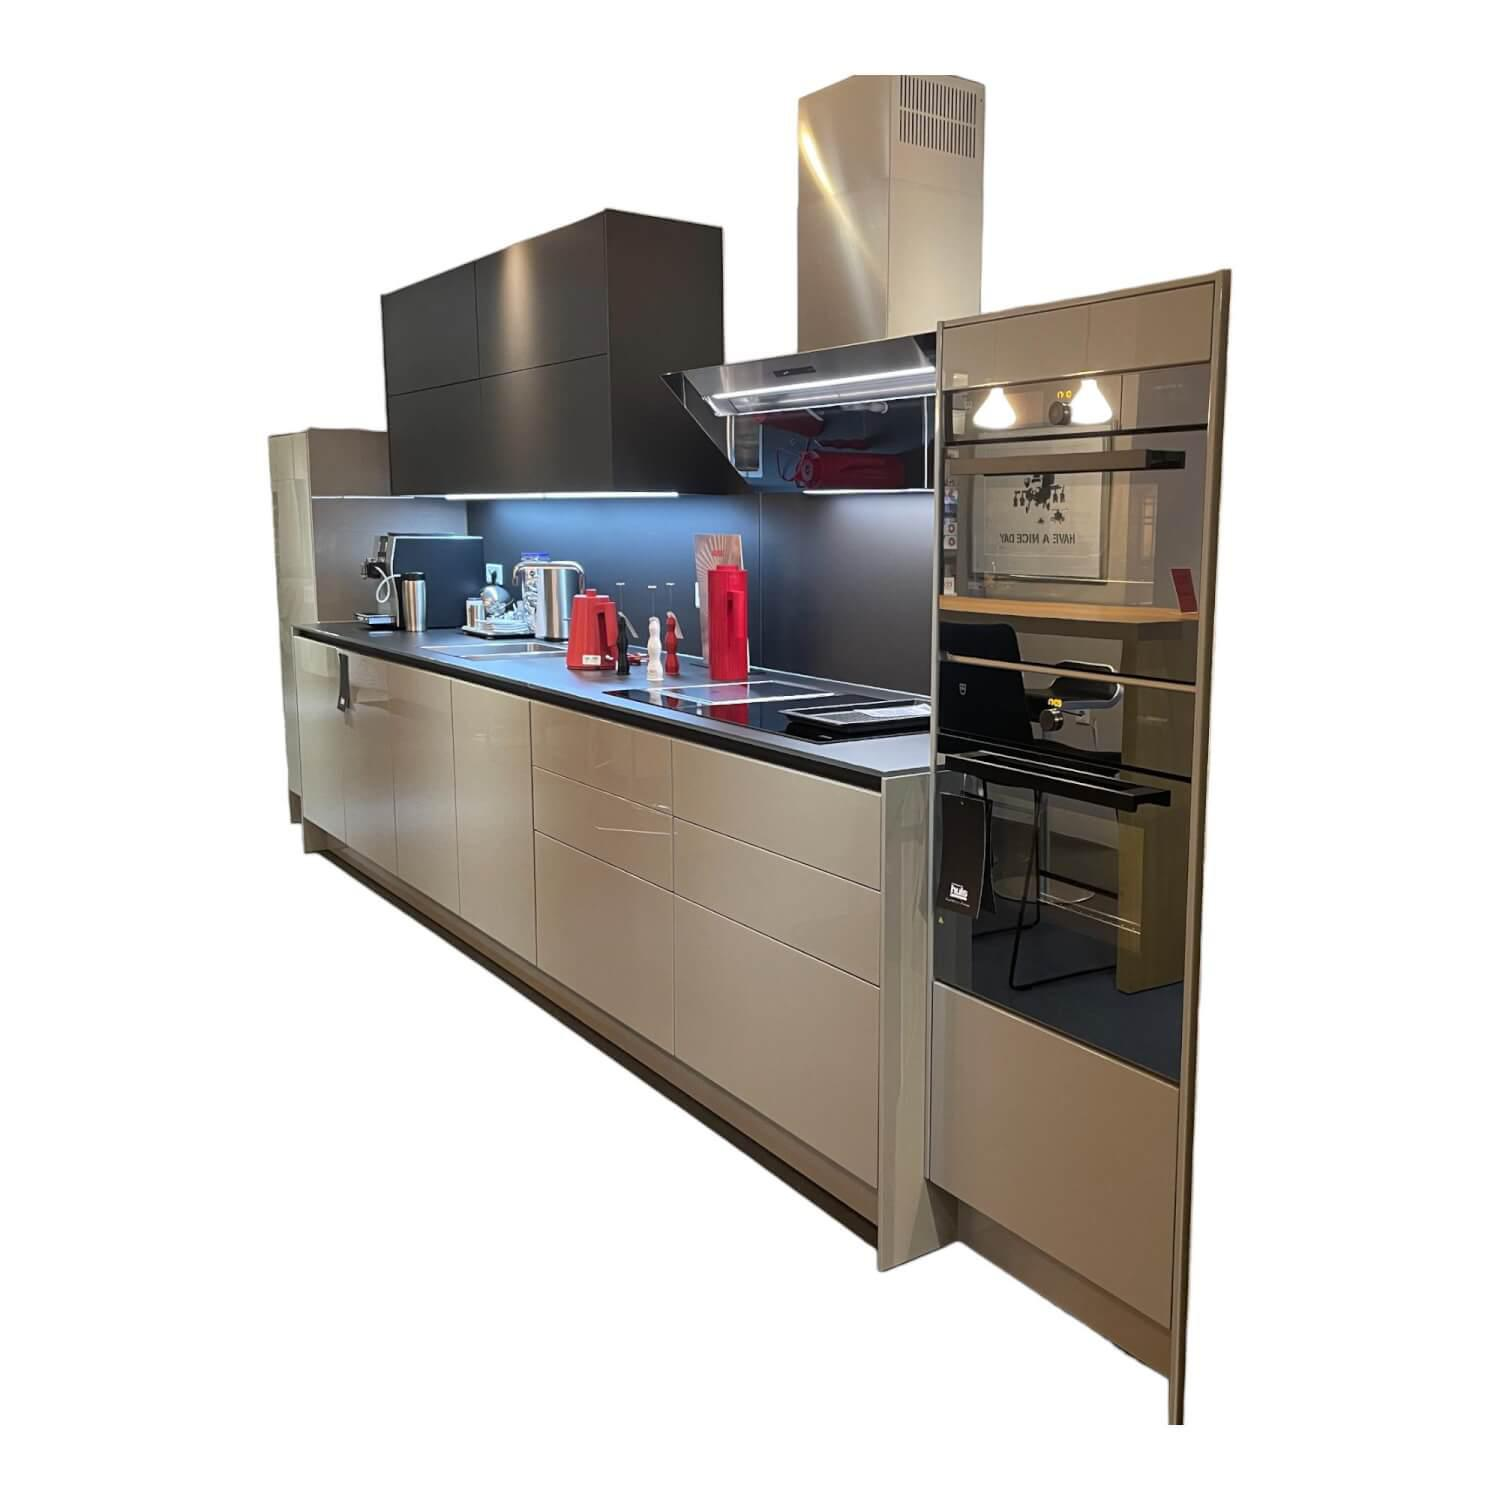 Kücheneinrichtung S2 Hochglanzfront Echtlack Achat Grau Kunststoffoberfläche Semi Laque Graphit Grau Mit Elektrogeräten